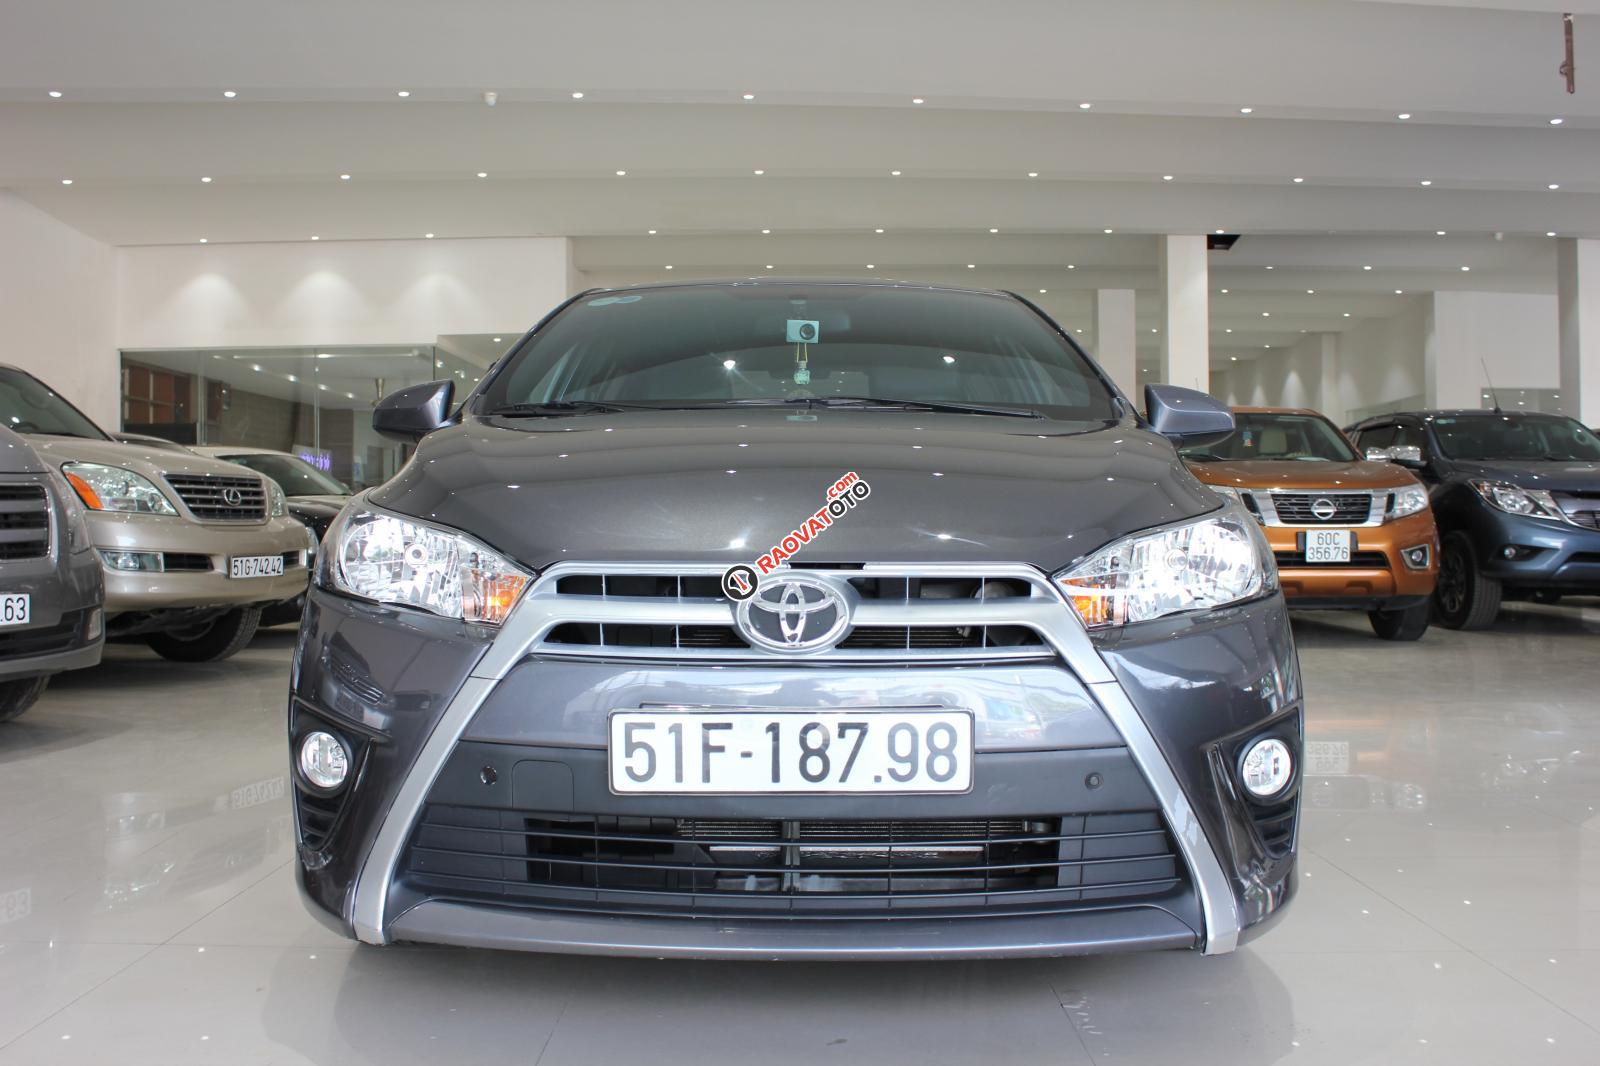 Cần bán Toyota Yaris E số tự động, bảo hành 6 tháng máy hộp số-15